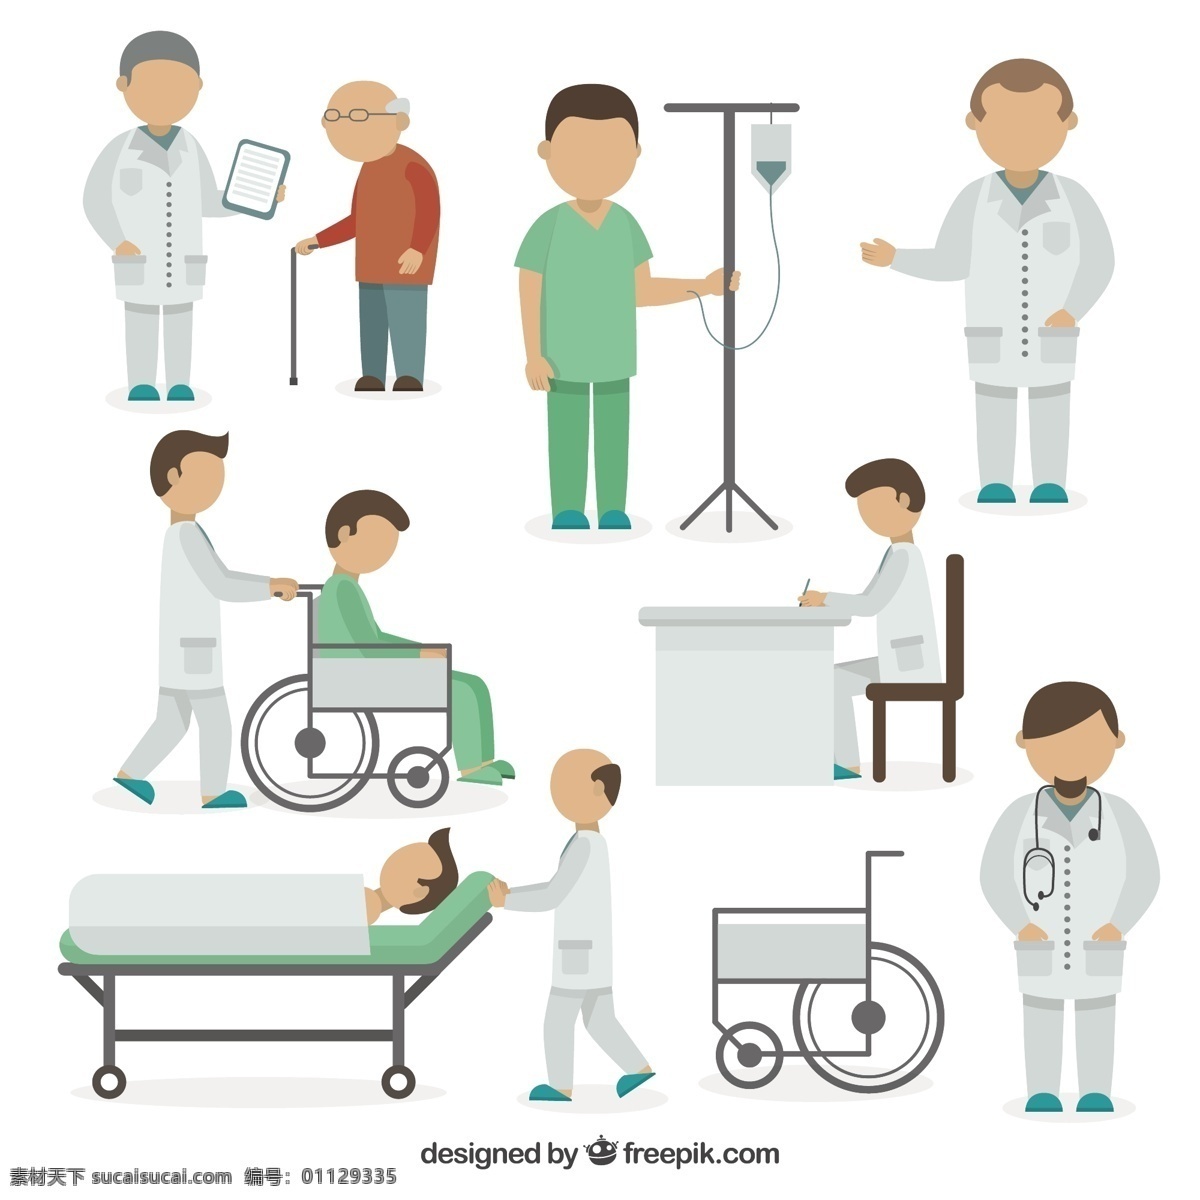 各种 医疗 情况 扁平 式 健康 医生 平面 医院 人 医学 平面设计 老年人 护士 医疗保健 护理 风格 轮椅 诊所 病人 品种 助理 白色